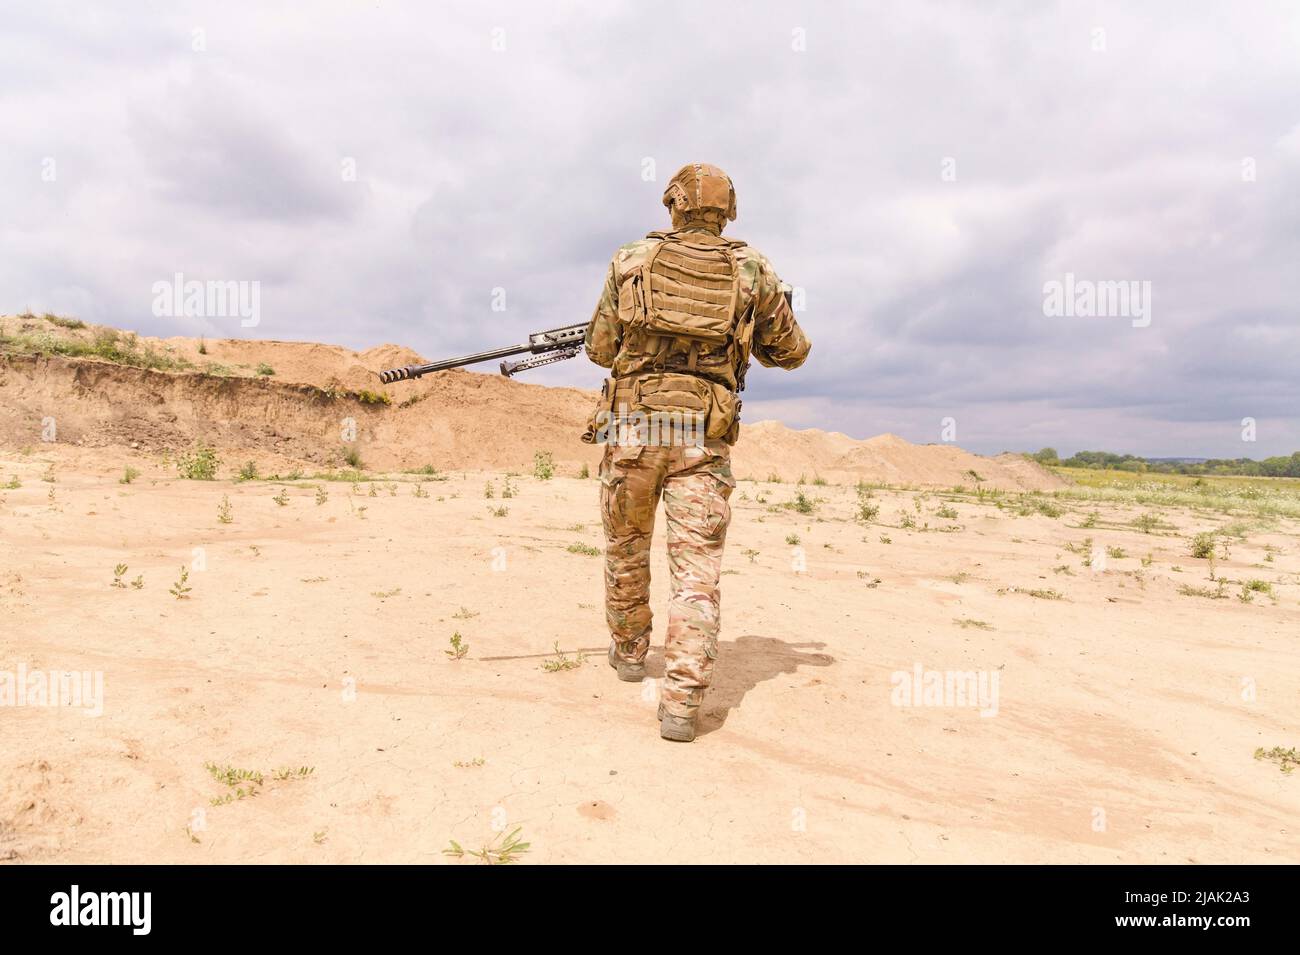 Soldat des forces spéciales en camouflage à la carabine, marchant dans le désert Banque D'Images